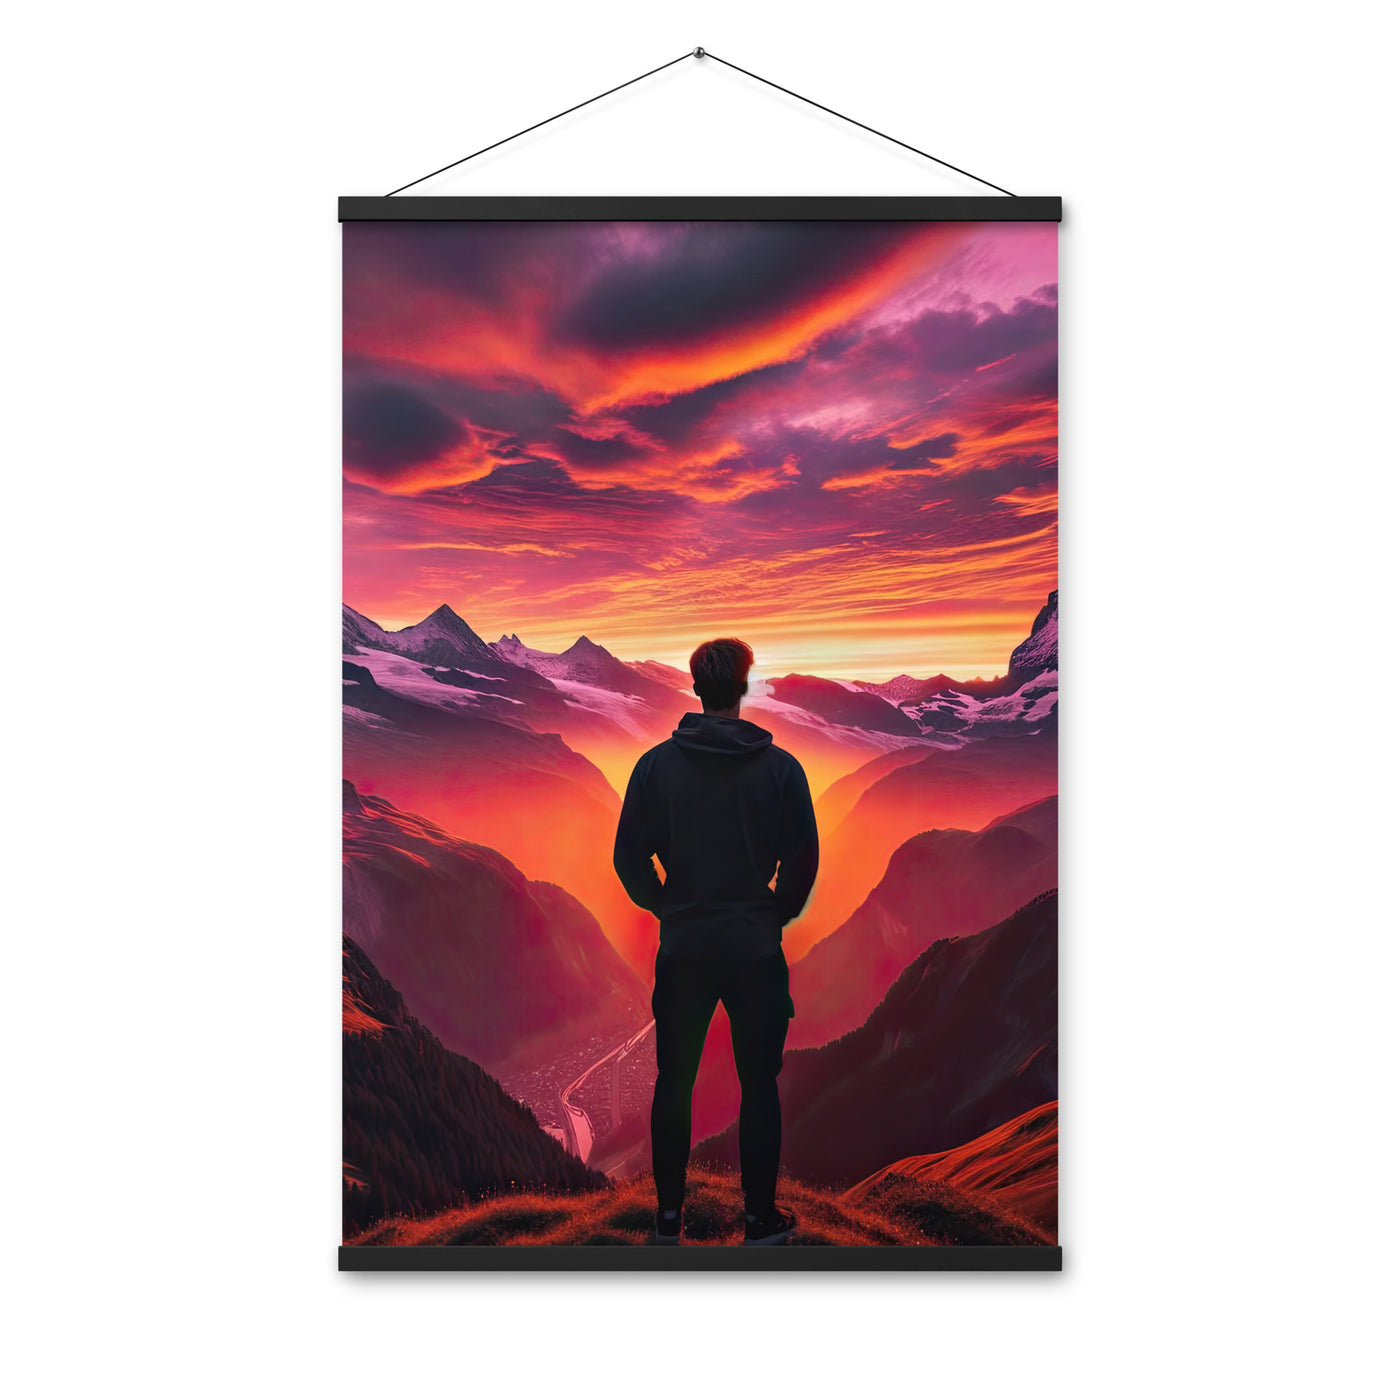 Foto der Schweizer Alpen im Sonnenuntergang, Himmel in surreal glänzenden Farbtönen - Premium Poster mit Aufhängung wandern xxx yyy zzz 61 x 91.4 cm